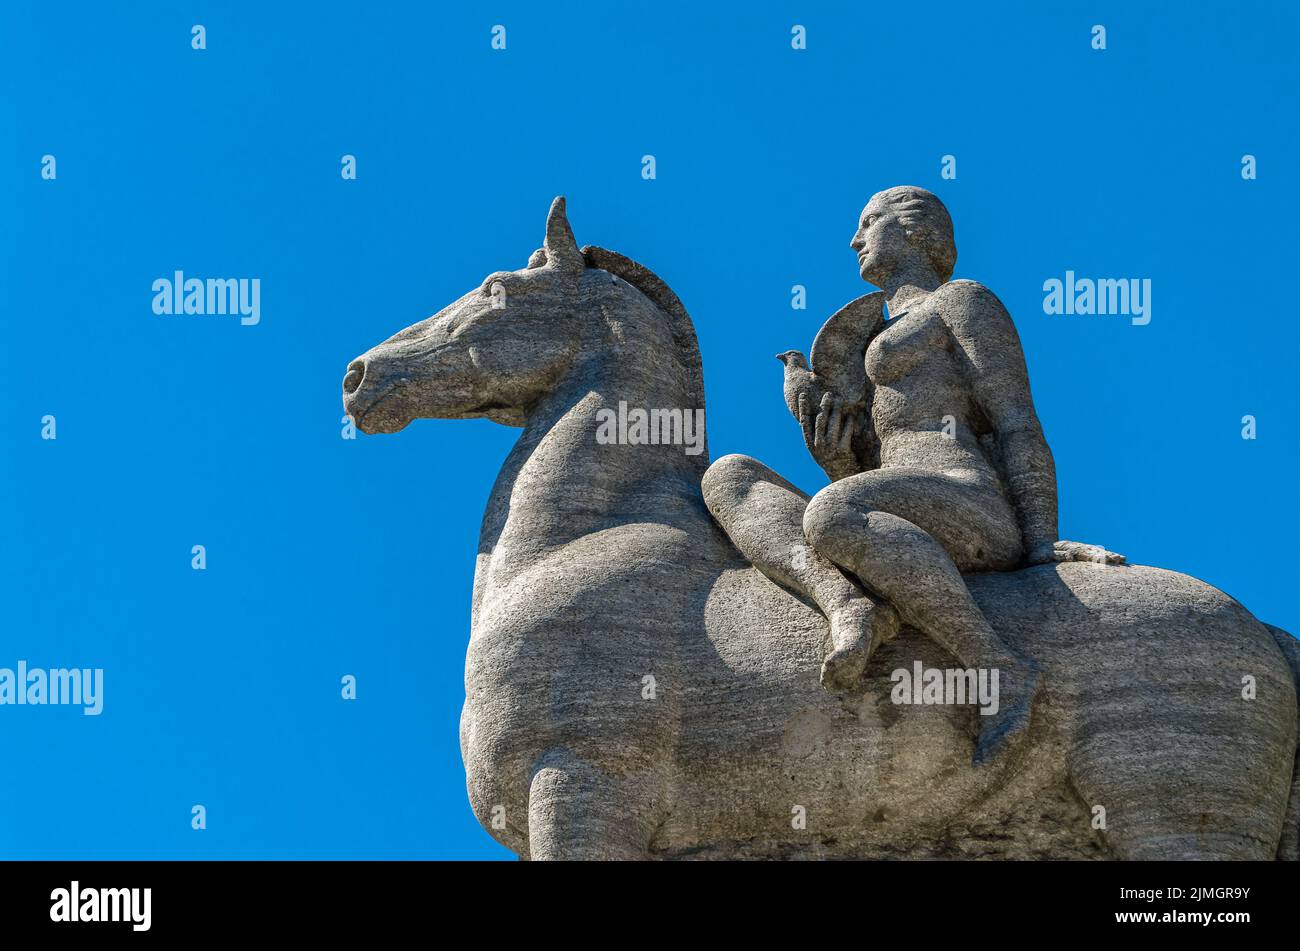 GENF, SCHWEIZ - 4. SEPTEMBER 2013: Ansicht der Statue 'Colombe de la Paix' ('Friedenstaube') in Genf, die vom Schweizer Bildhauer Frederi angefertigt wurde Stockfoto